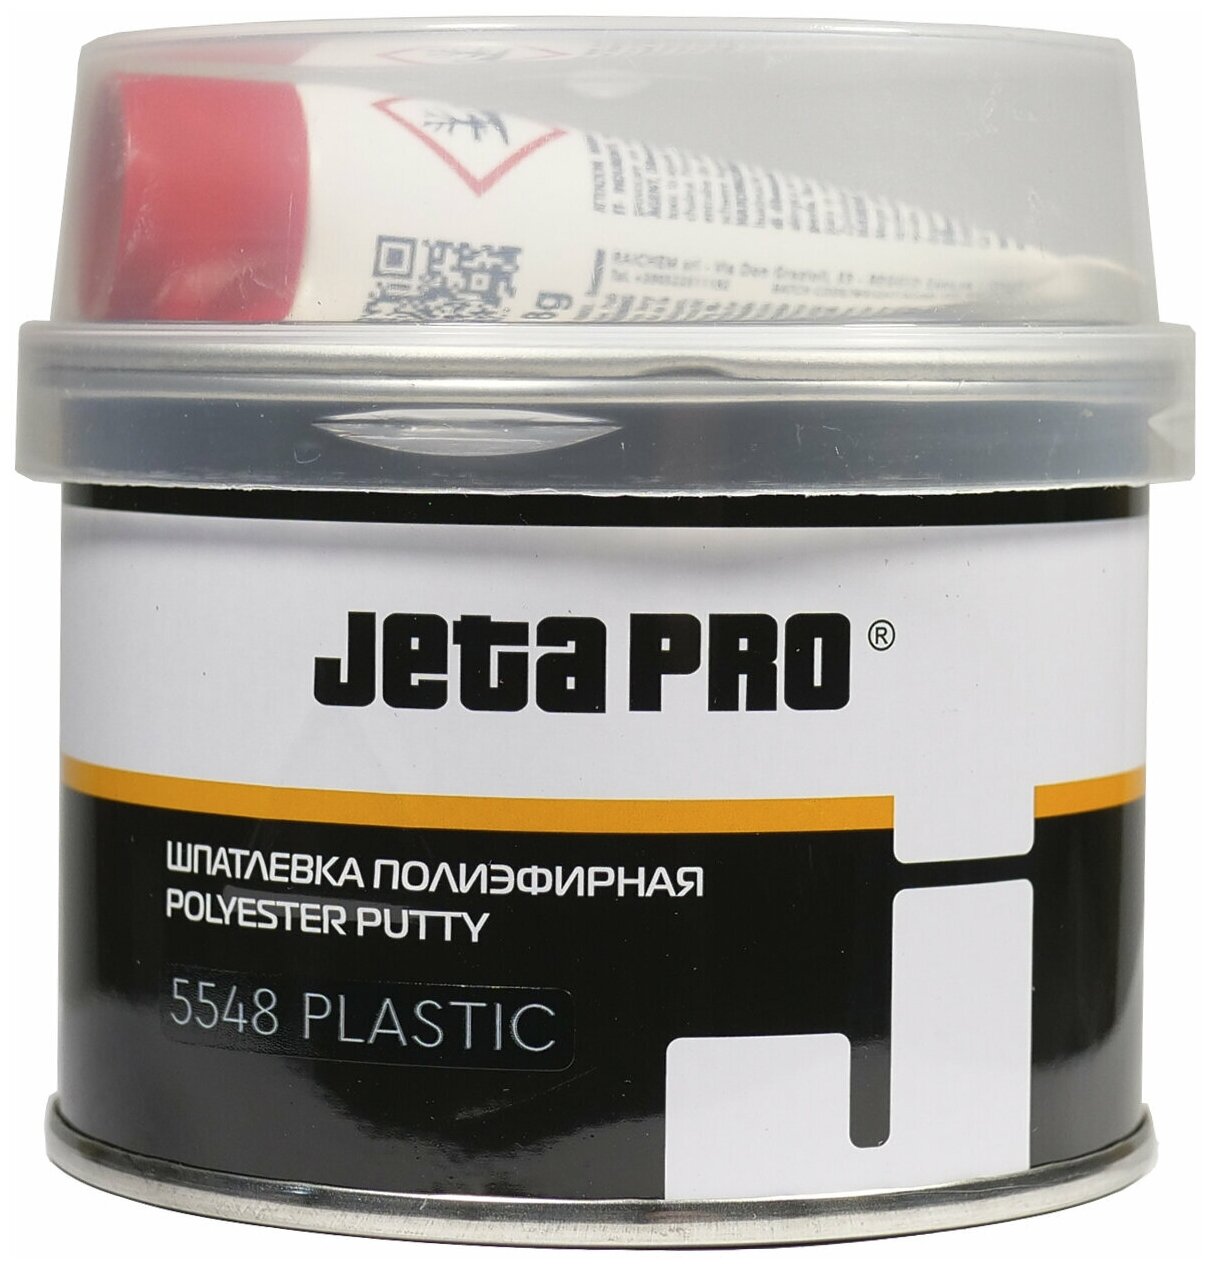 Шпатлевка PLASTIC Jeta Pro 5548 0,25 кг